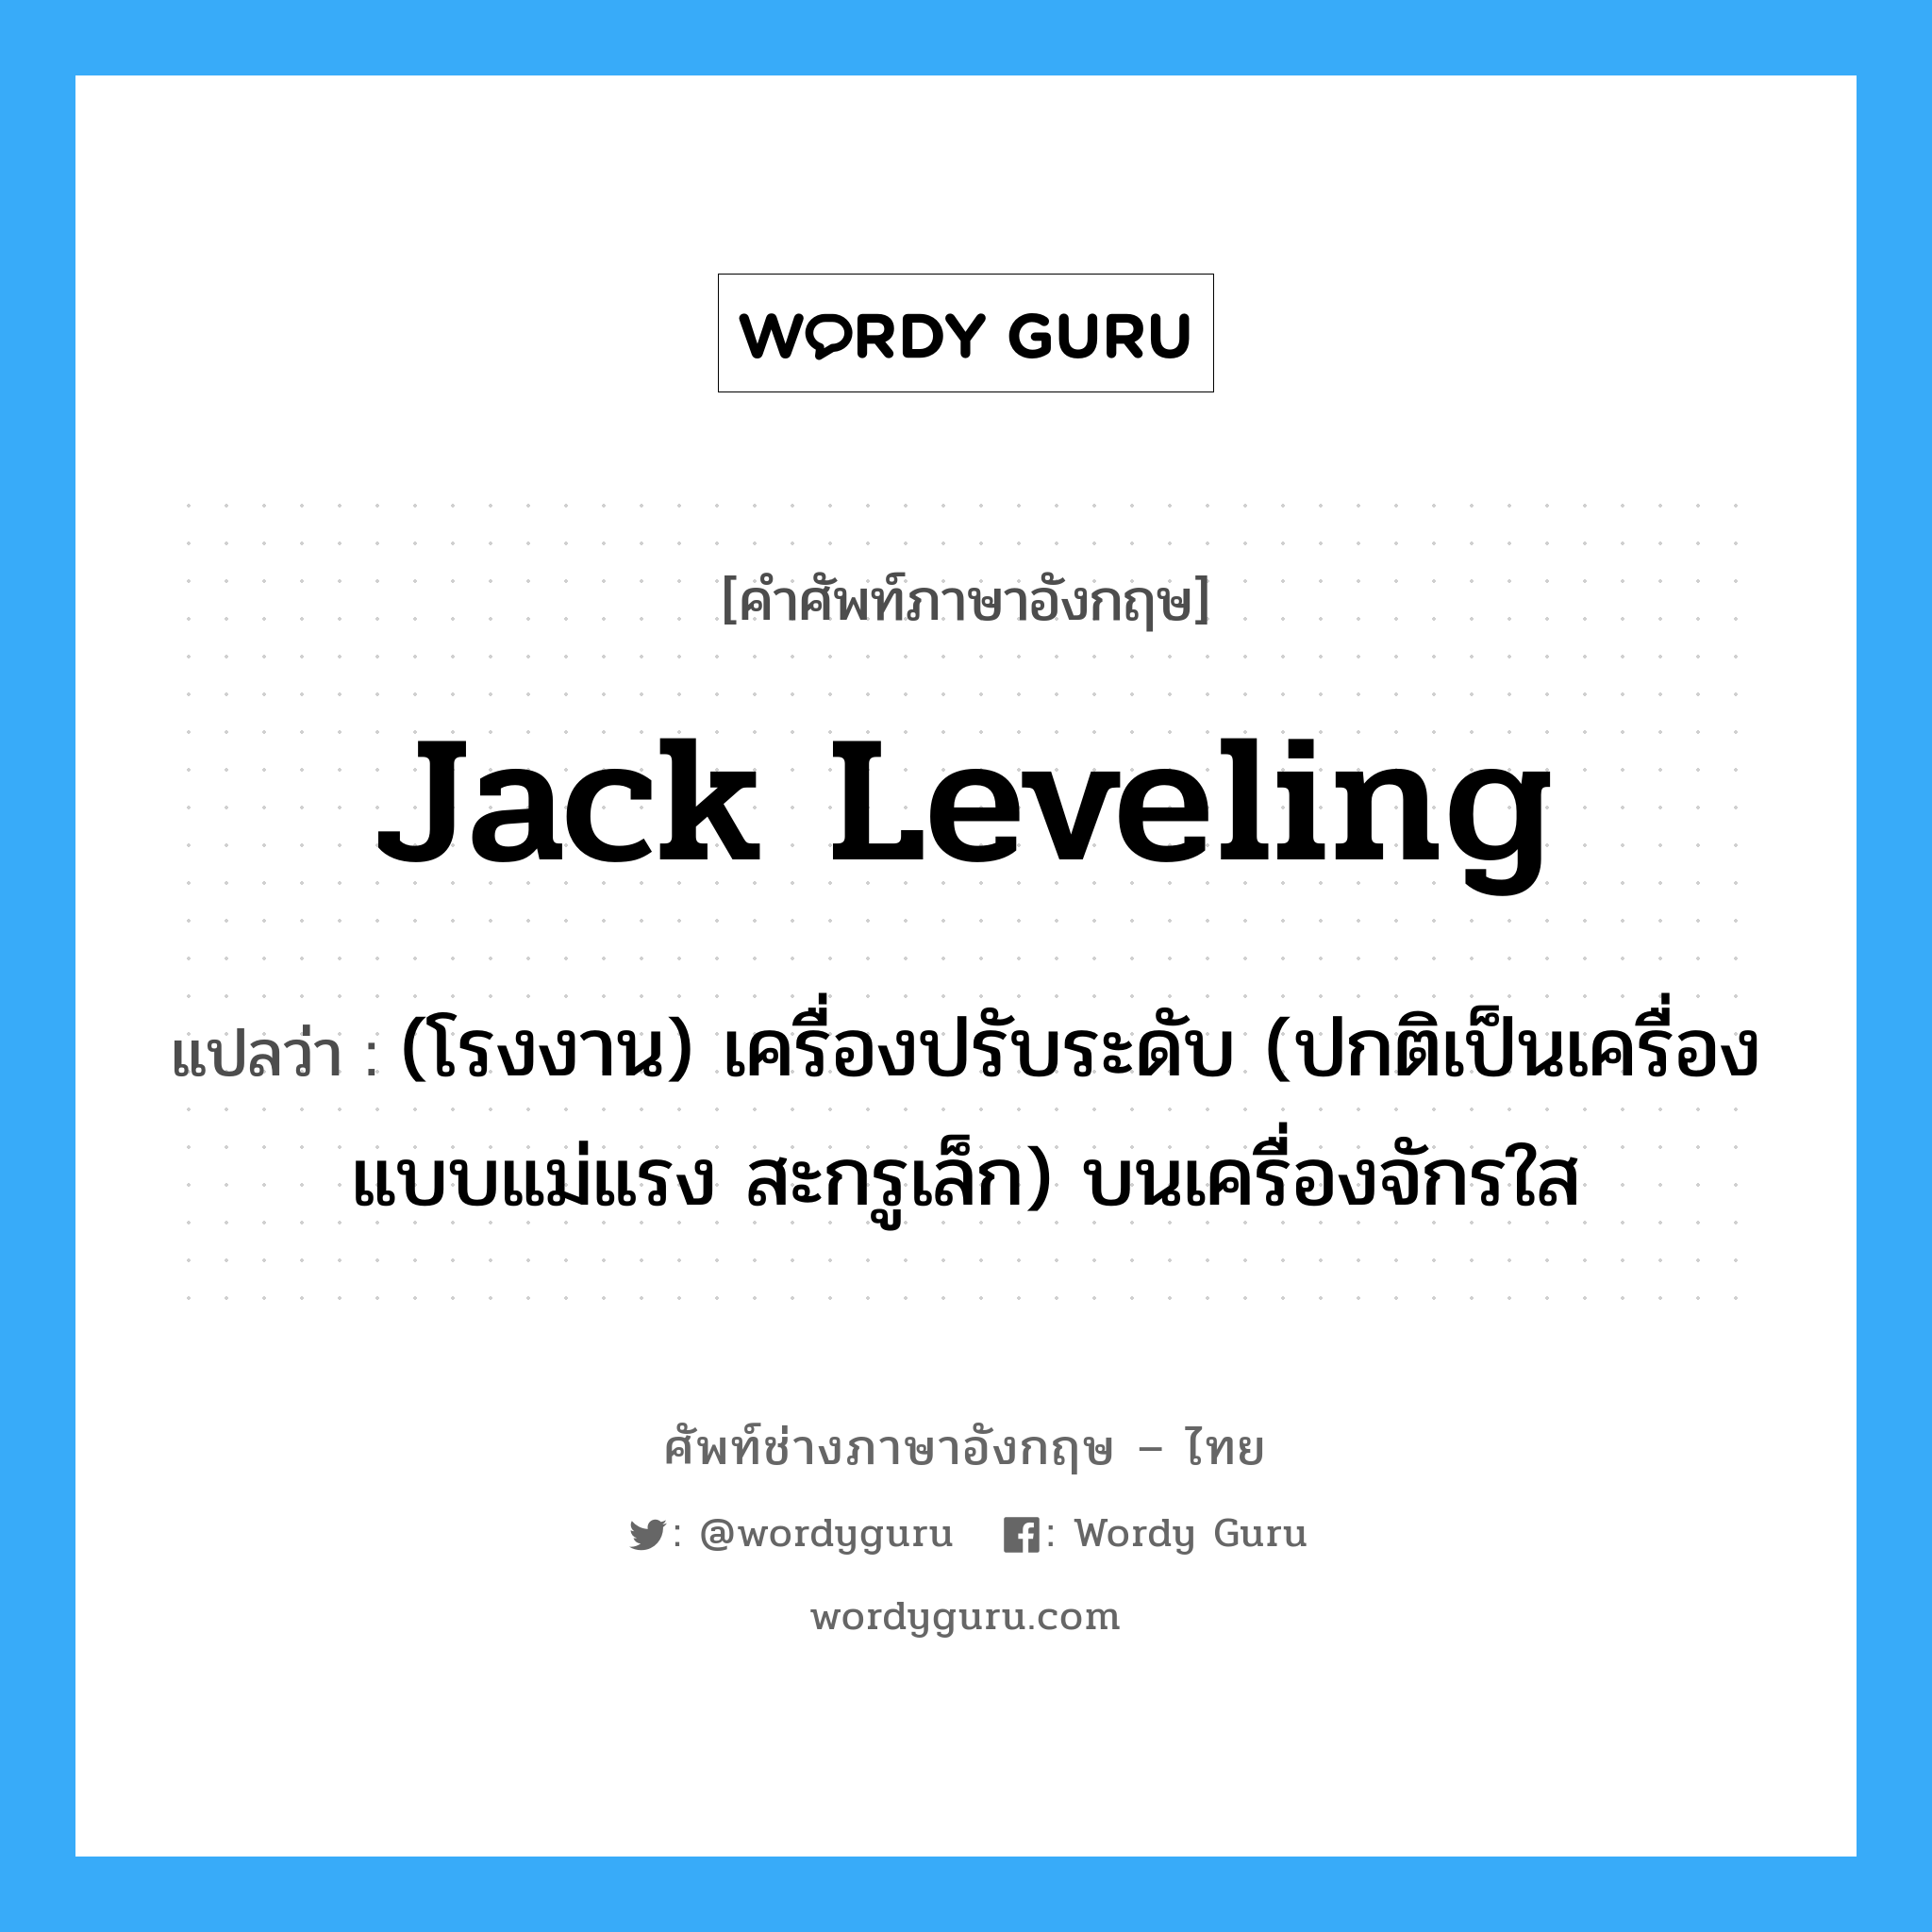 jack leveling แปลว่า?, คำศัพท์ช่างภาษาอังกฤษ - ไทย jack leveling คำศัพท์ภาษาอังกฤษ jack leveling แปลว่า (โรงงาน) เครื่องปรับระดับ (ปกติเป็นเครื่องแบบแม่แรง สะกรูเล็ก) บนเครื่องจักรใส